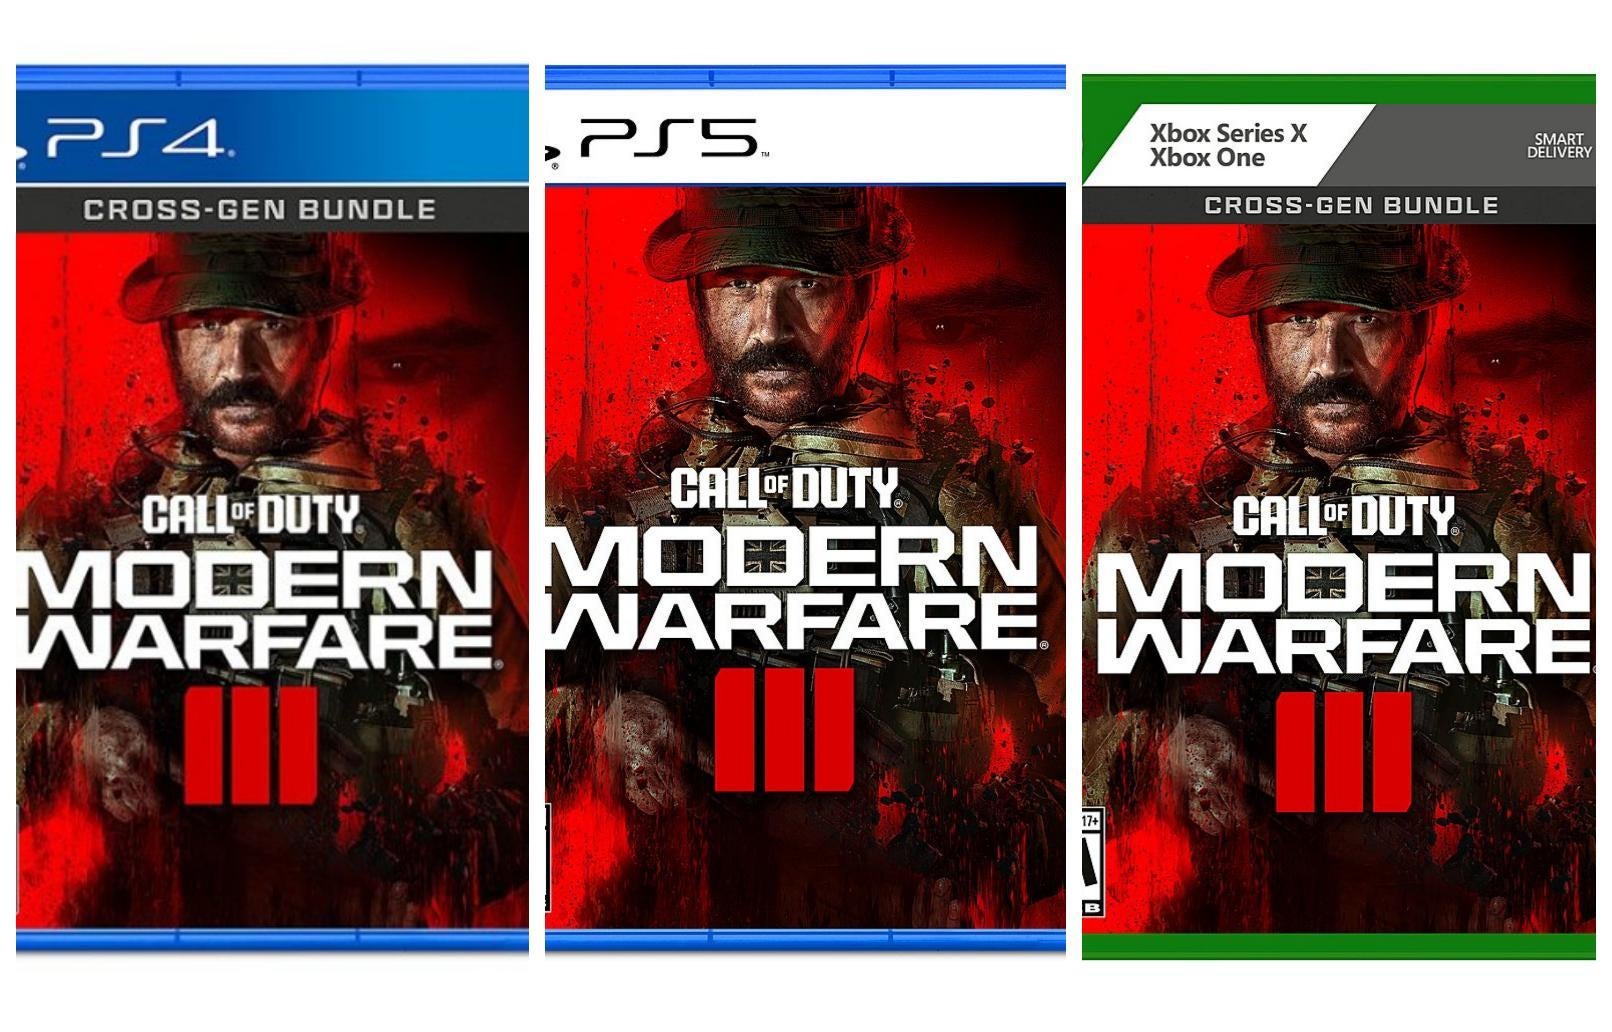 Call of Duty Modern Warfare 3 PS4